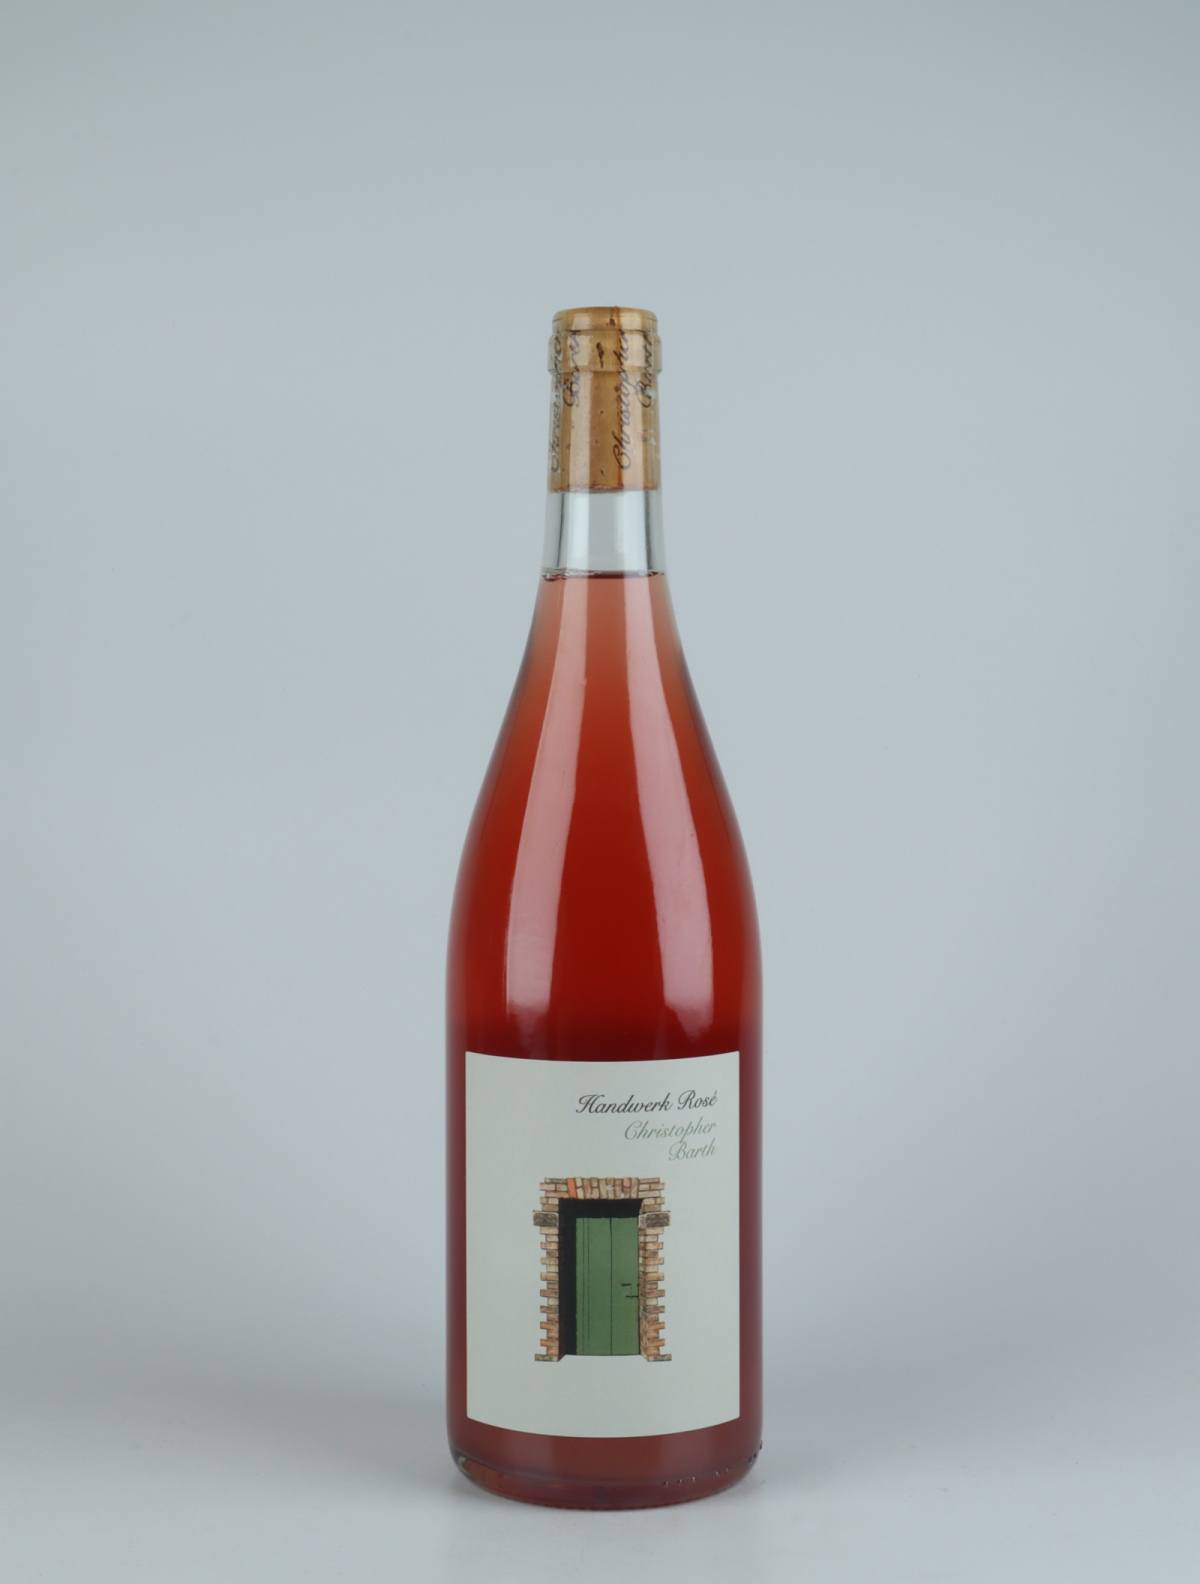 En flaske 2020 Handwerk Rosé Rosé fra Christopher Barth, Rheinhessen i Tyskland